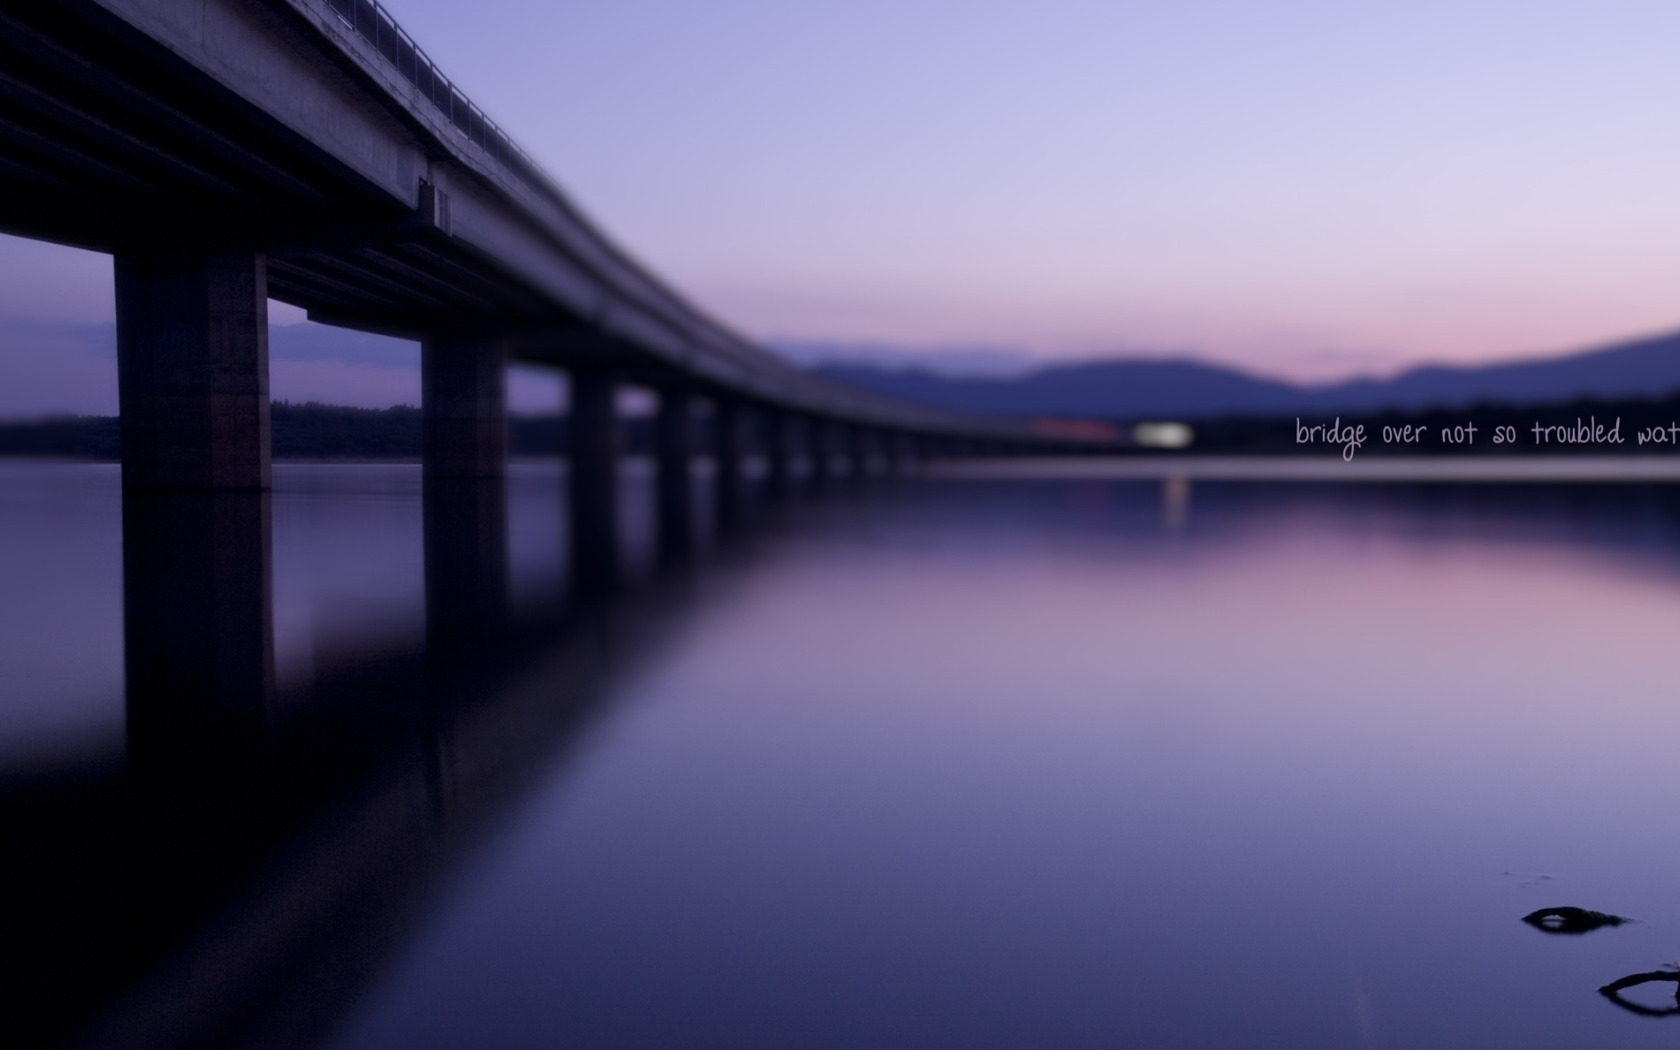 Размыт мост. Надпись на мосту. Текстура моста под которым вода. Размытое отражение моста в воде рисунок. Фото на мостике у воды.